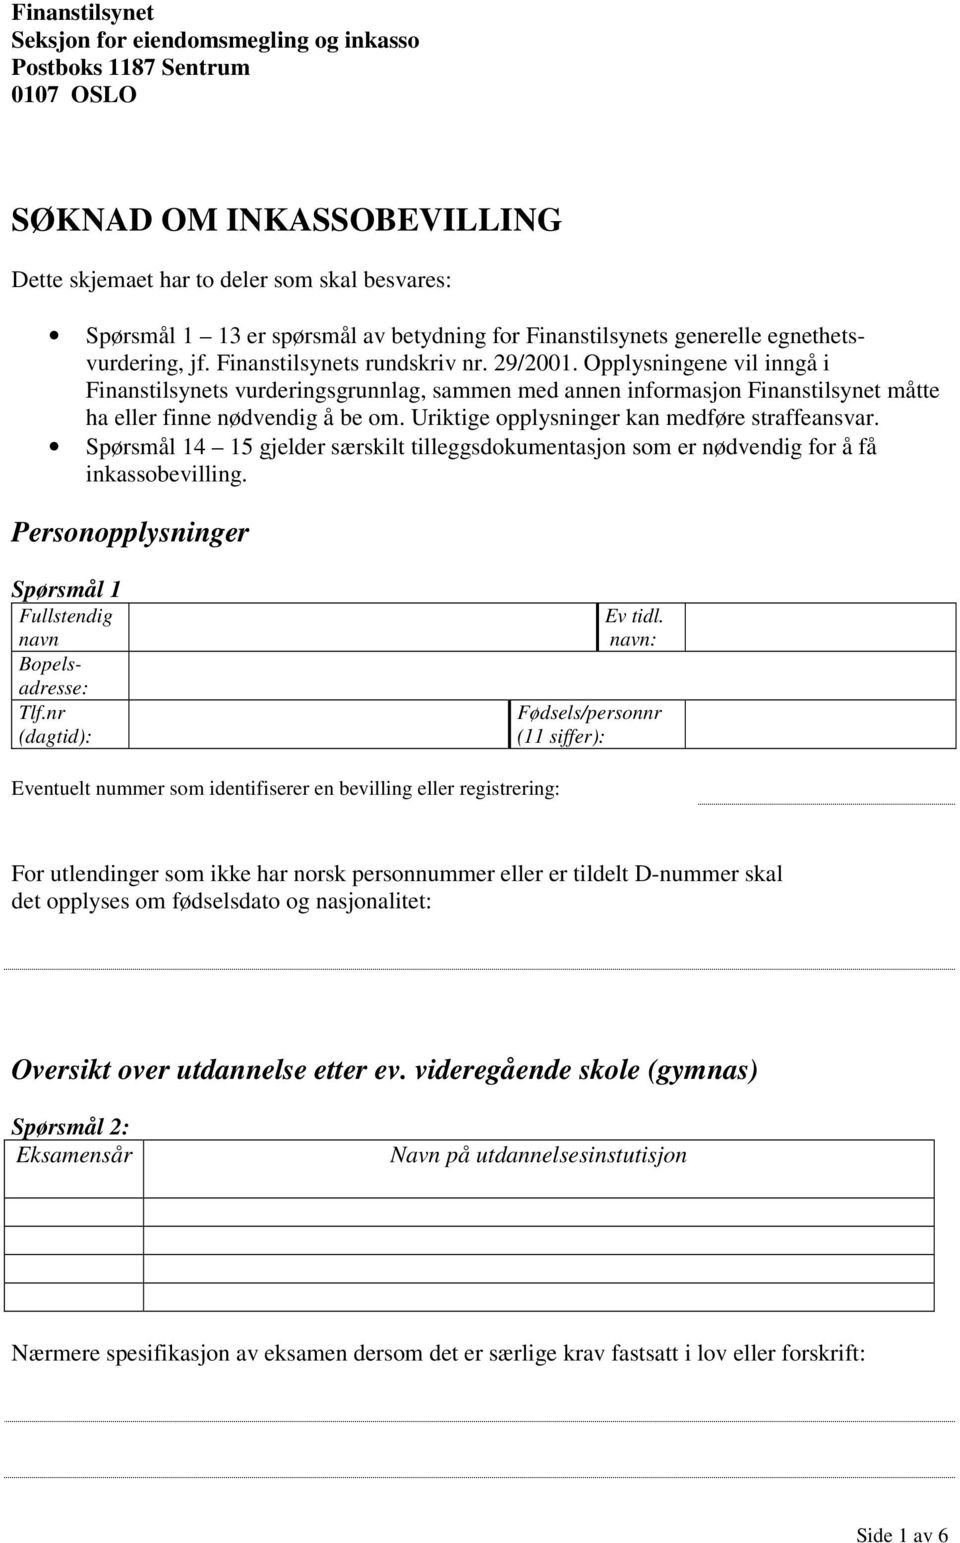 SØKNAD OM INKASSOBEVILLING - PDF Free Download